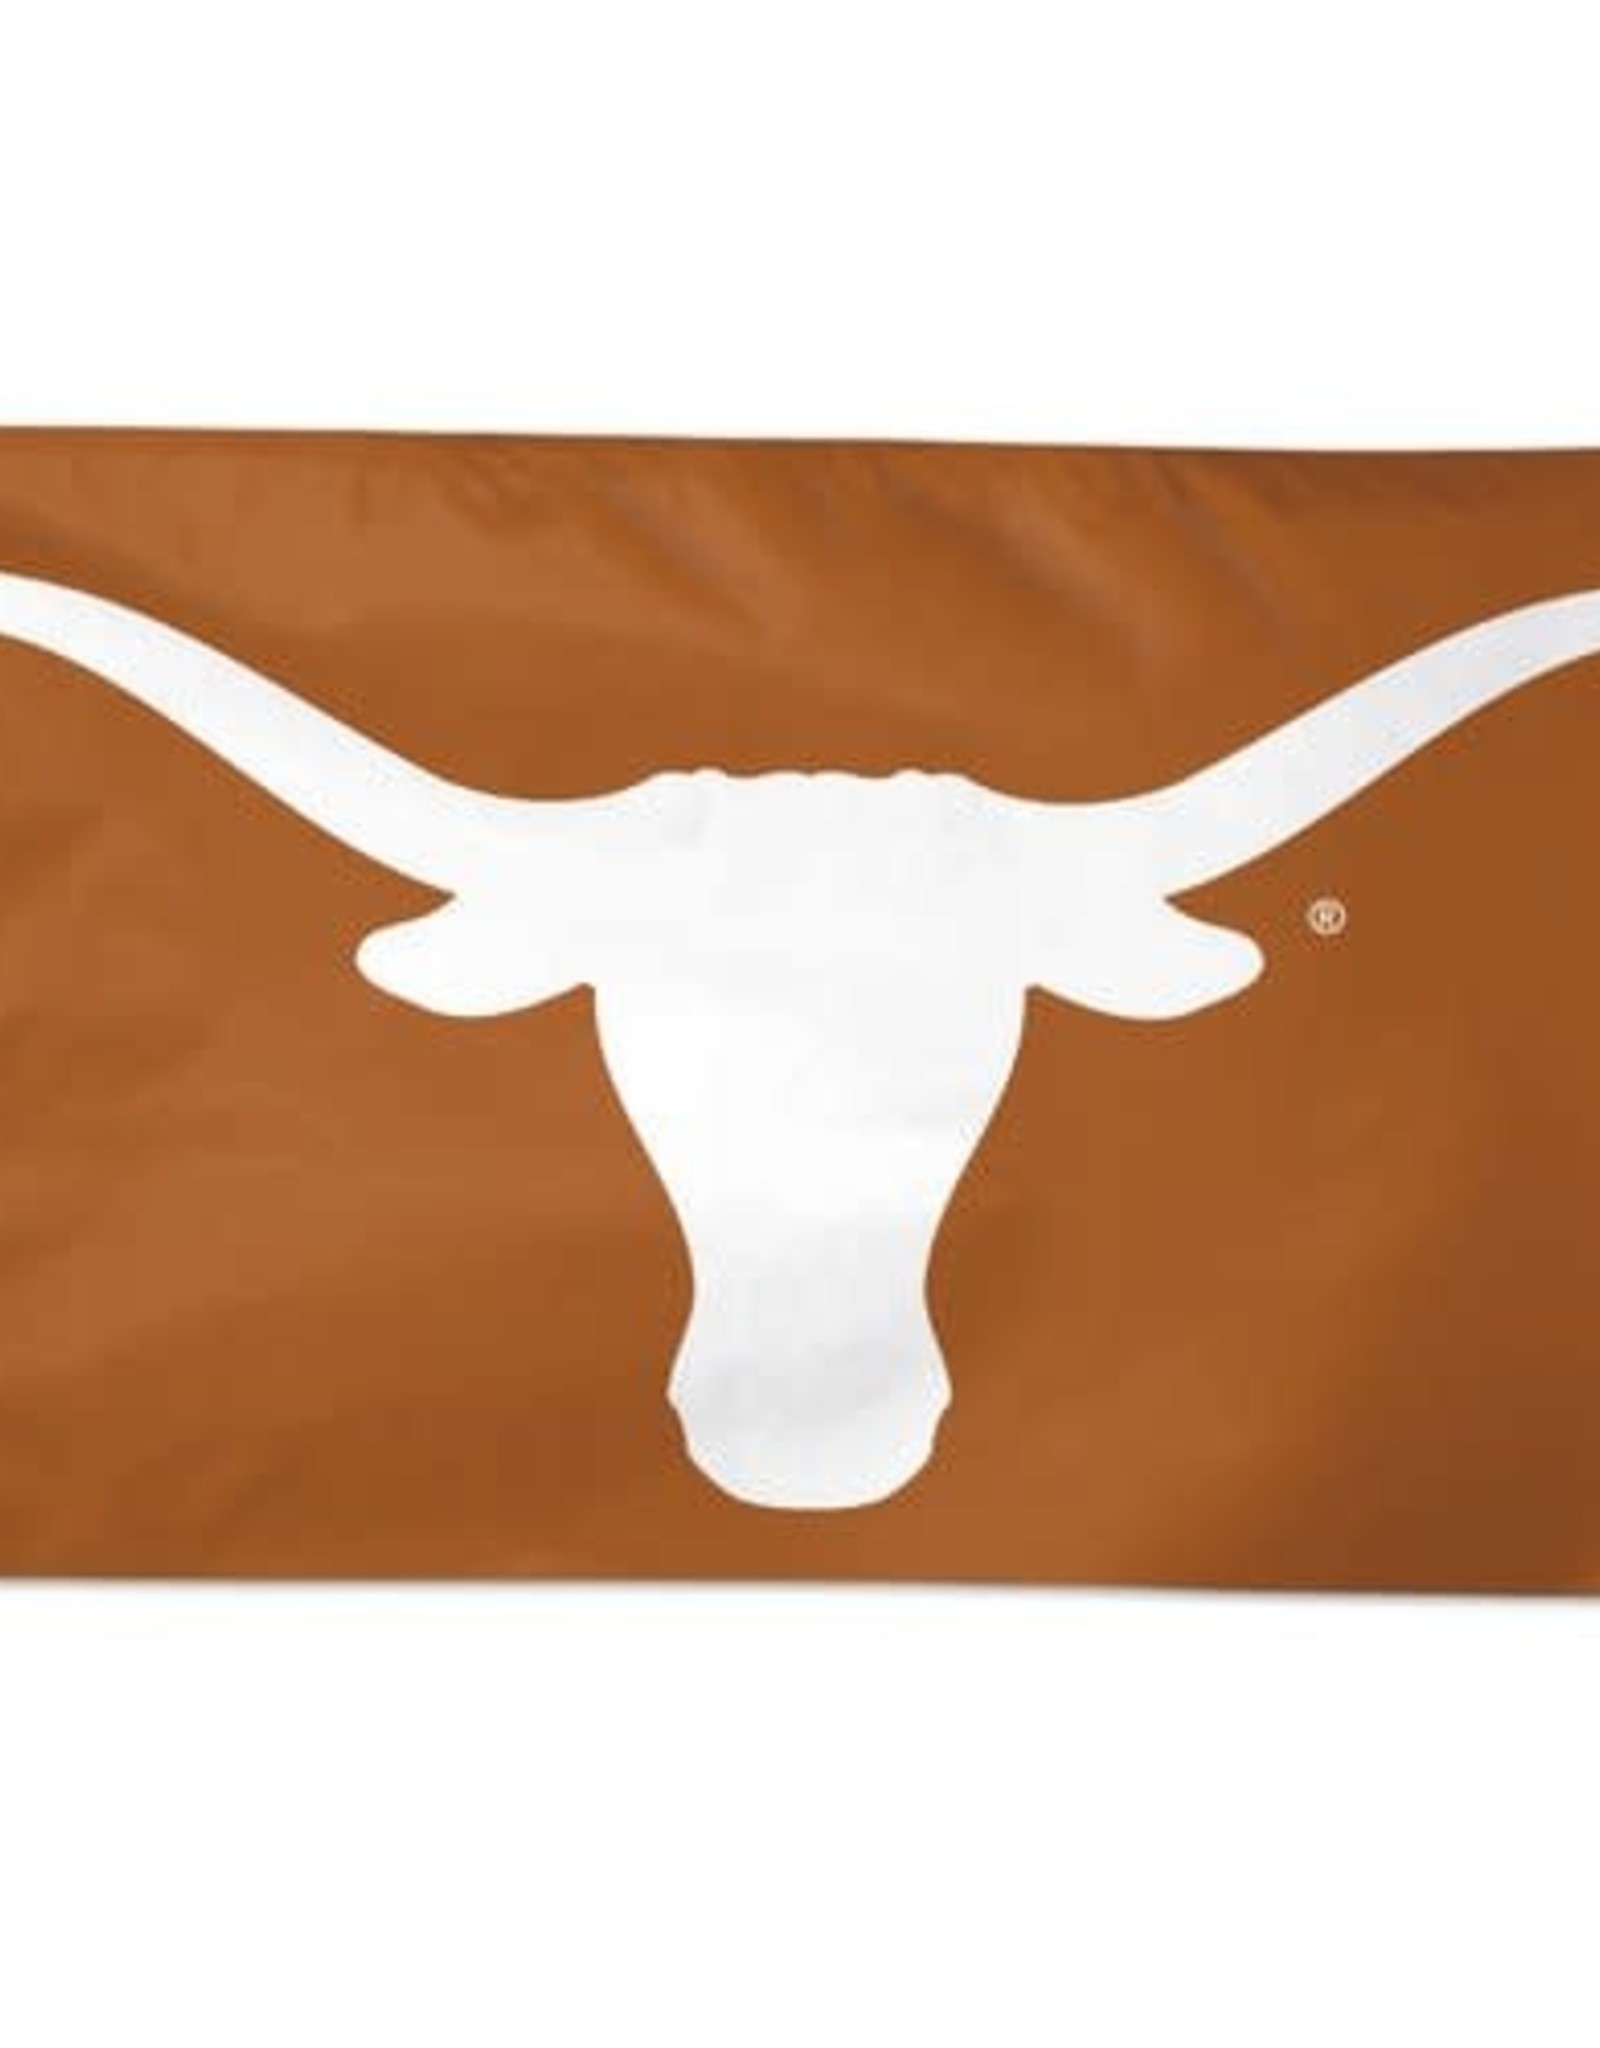 Team Flag -Texas Longhorns